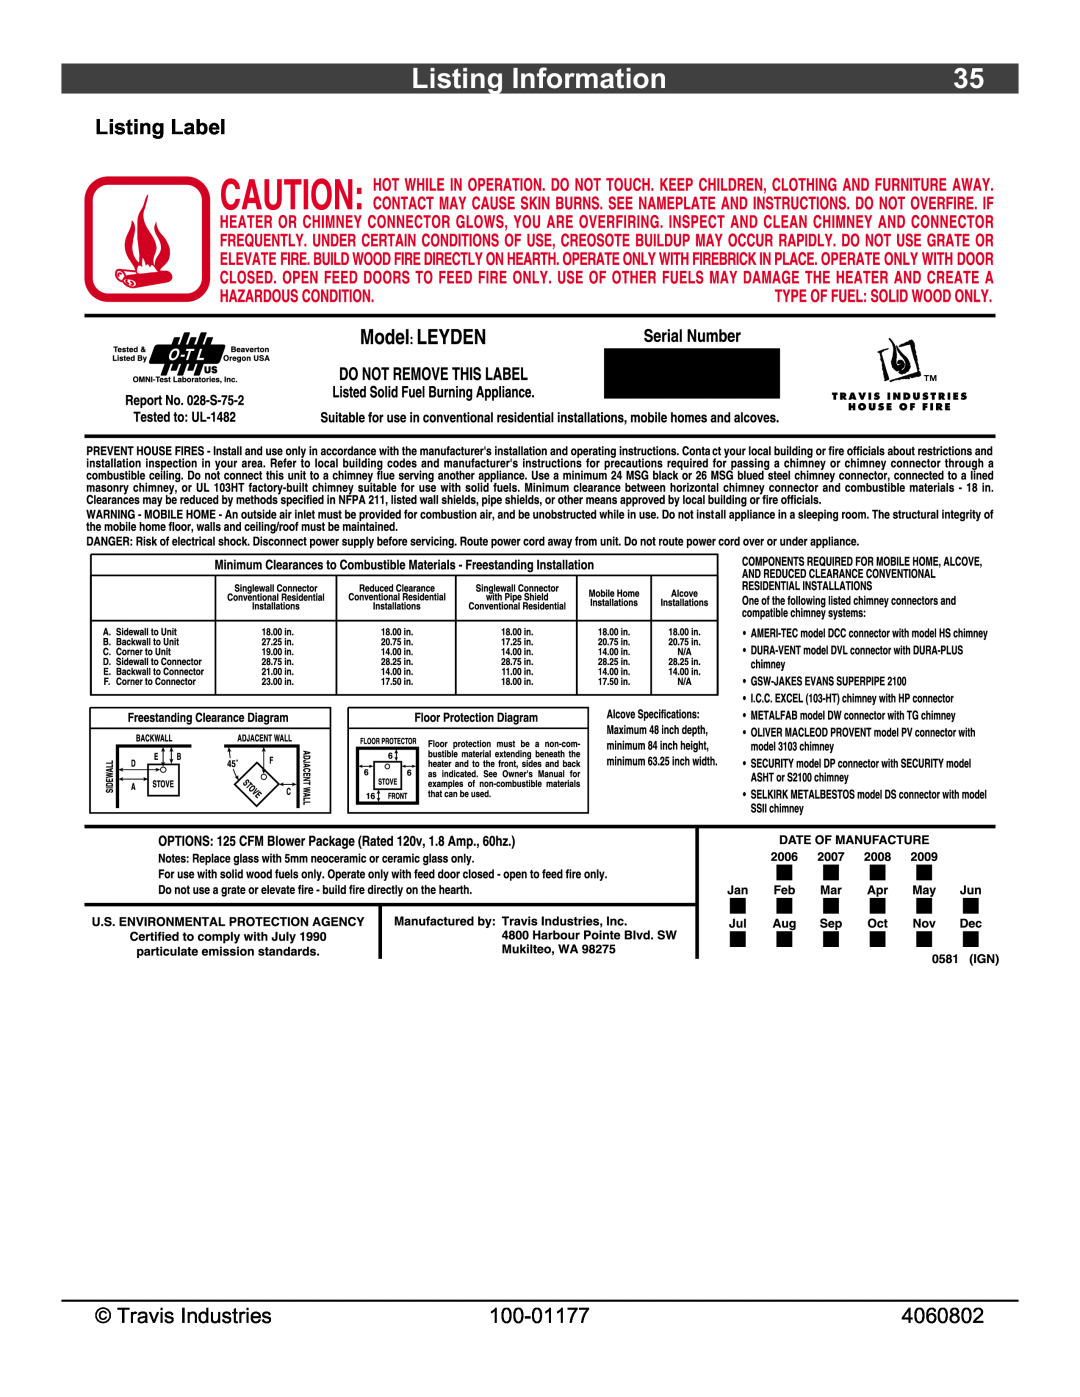 Lopi Leyden Wood Stove owner manual Listing Information, Listing Label 